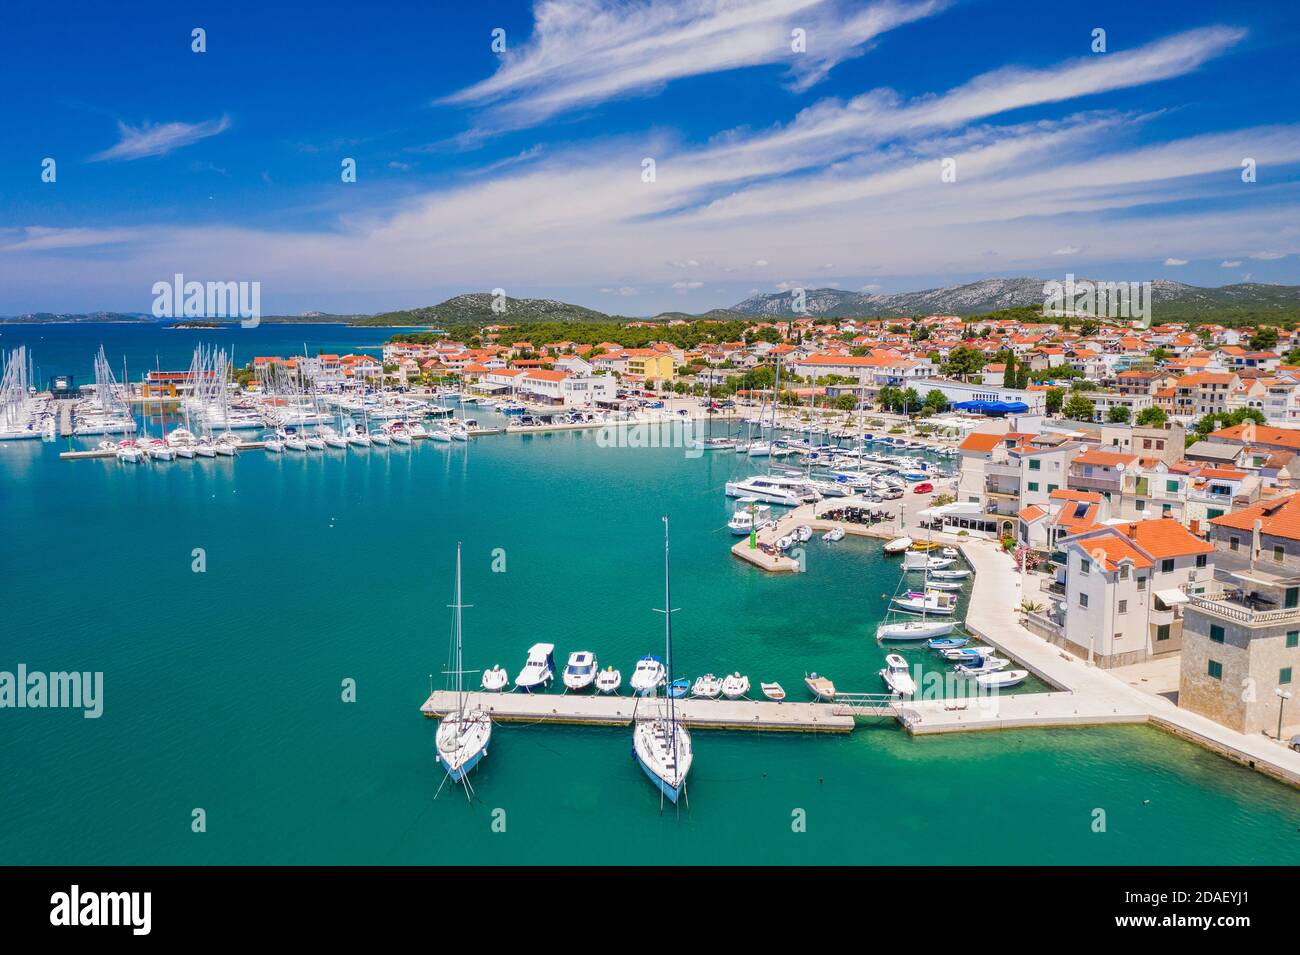 Vue aérienne de la ville de Pirovac, destination touristique dans la région de Dalmatie en Croatie Banque D'Images